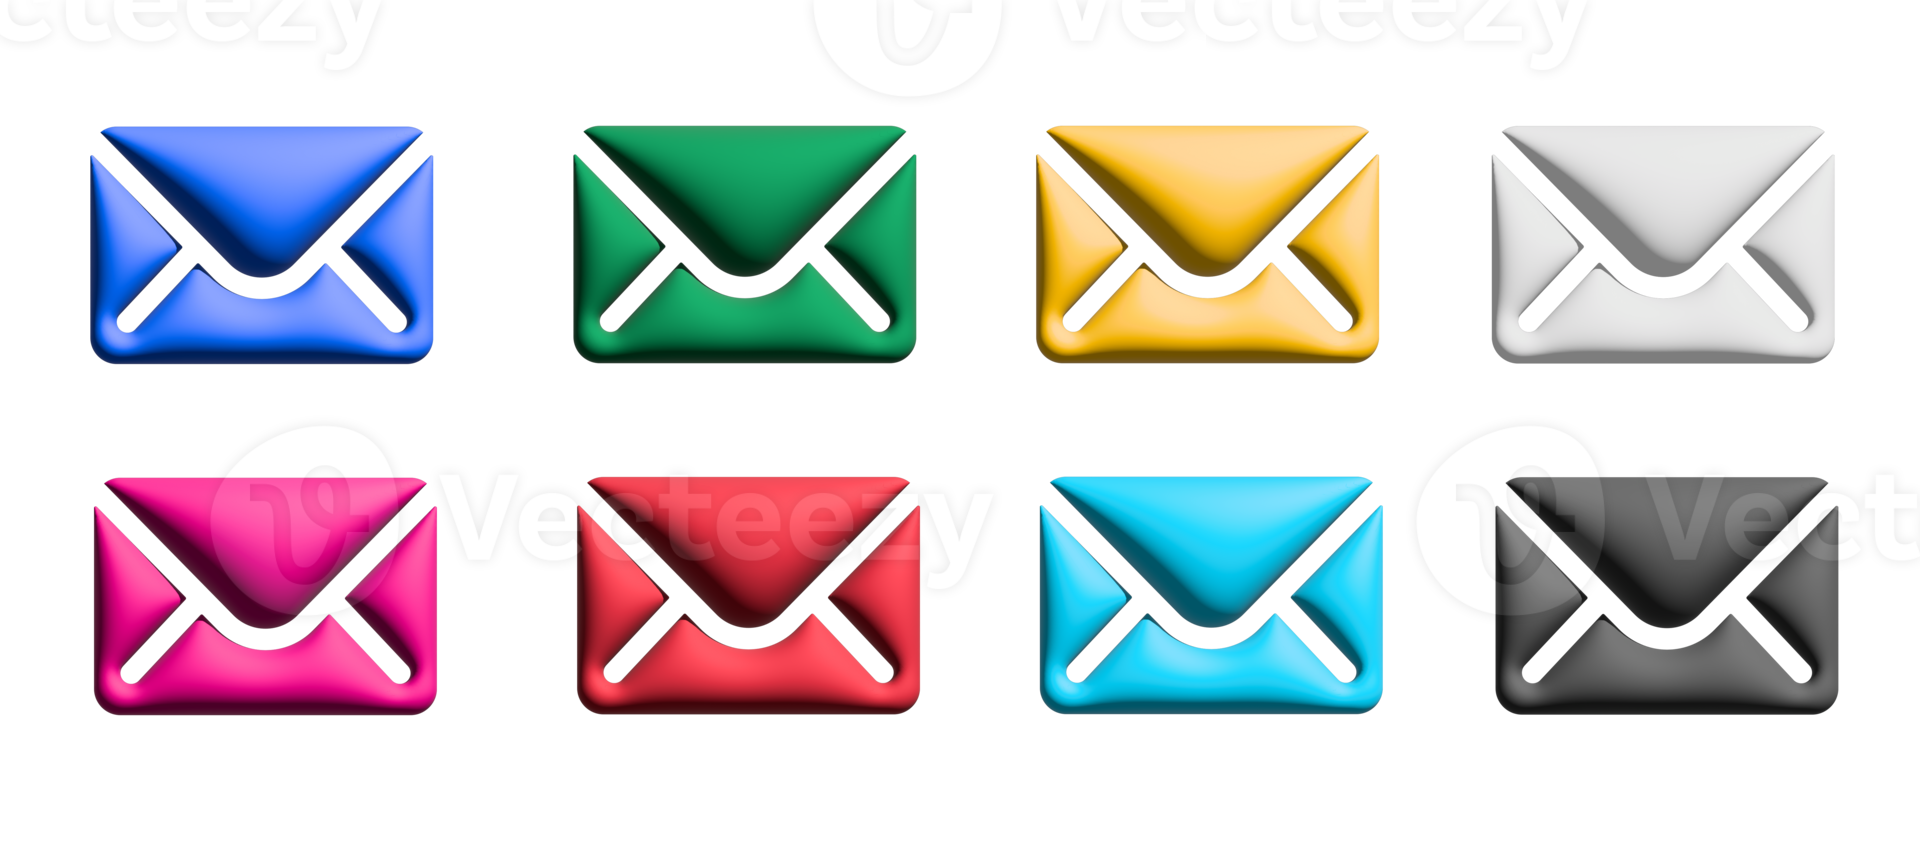 conjunto de iconos de correo, elementos gráficos de símbolos coloridos png